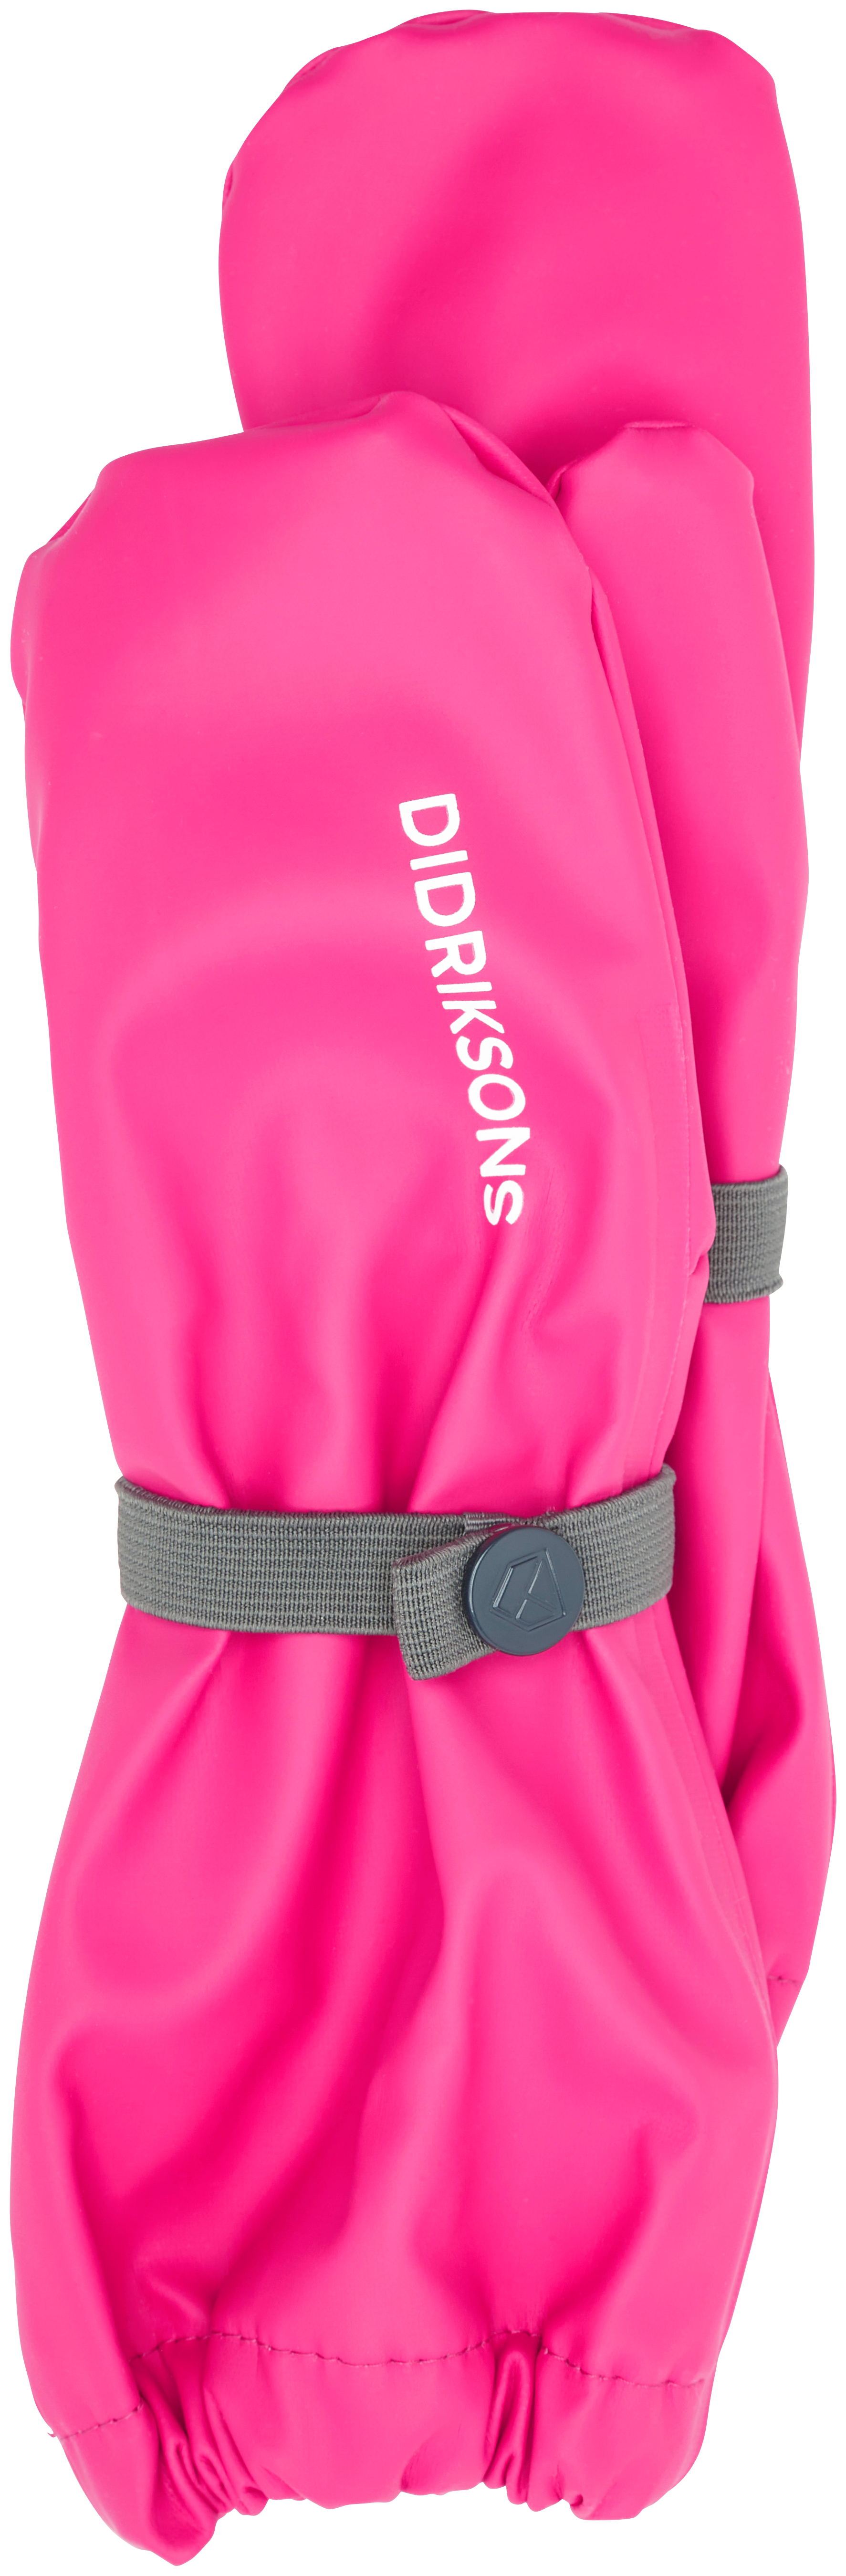 Didriksons Kids’ Glove Classics Plastic Pink